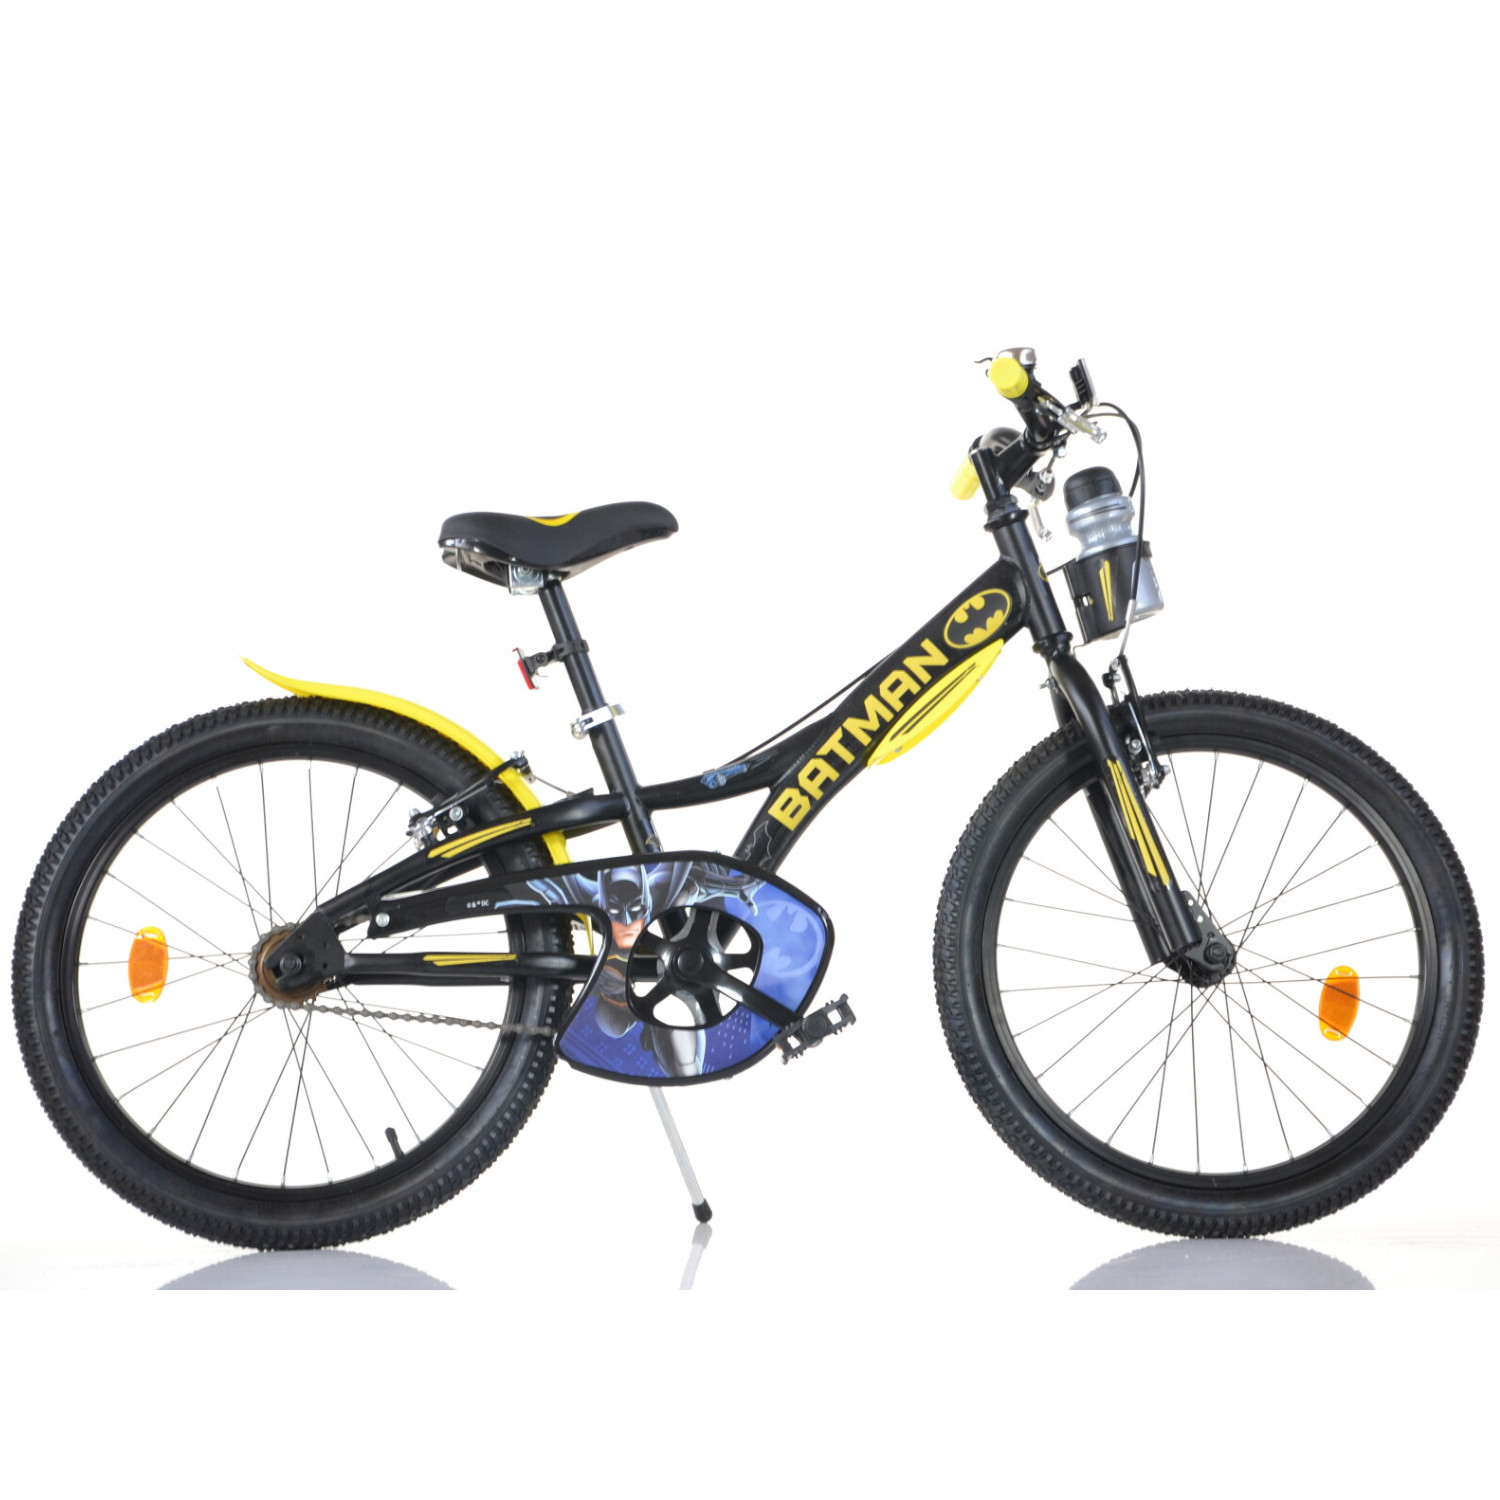 Bicicletta per bambini e ragazzini modello batman misura 20 pollici - BATMAN